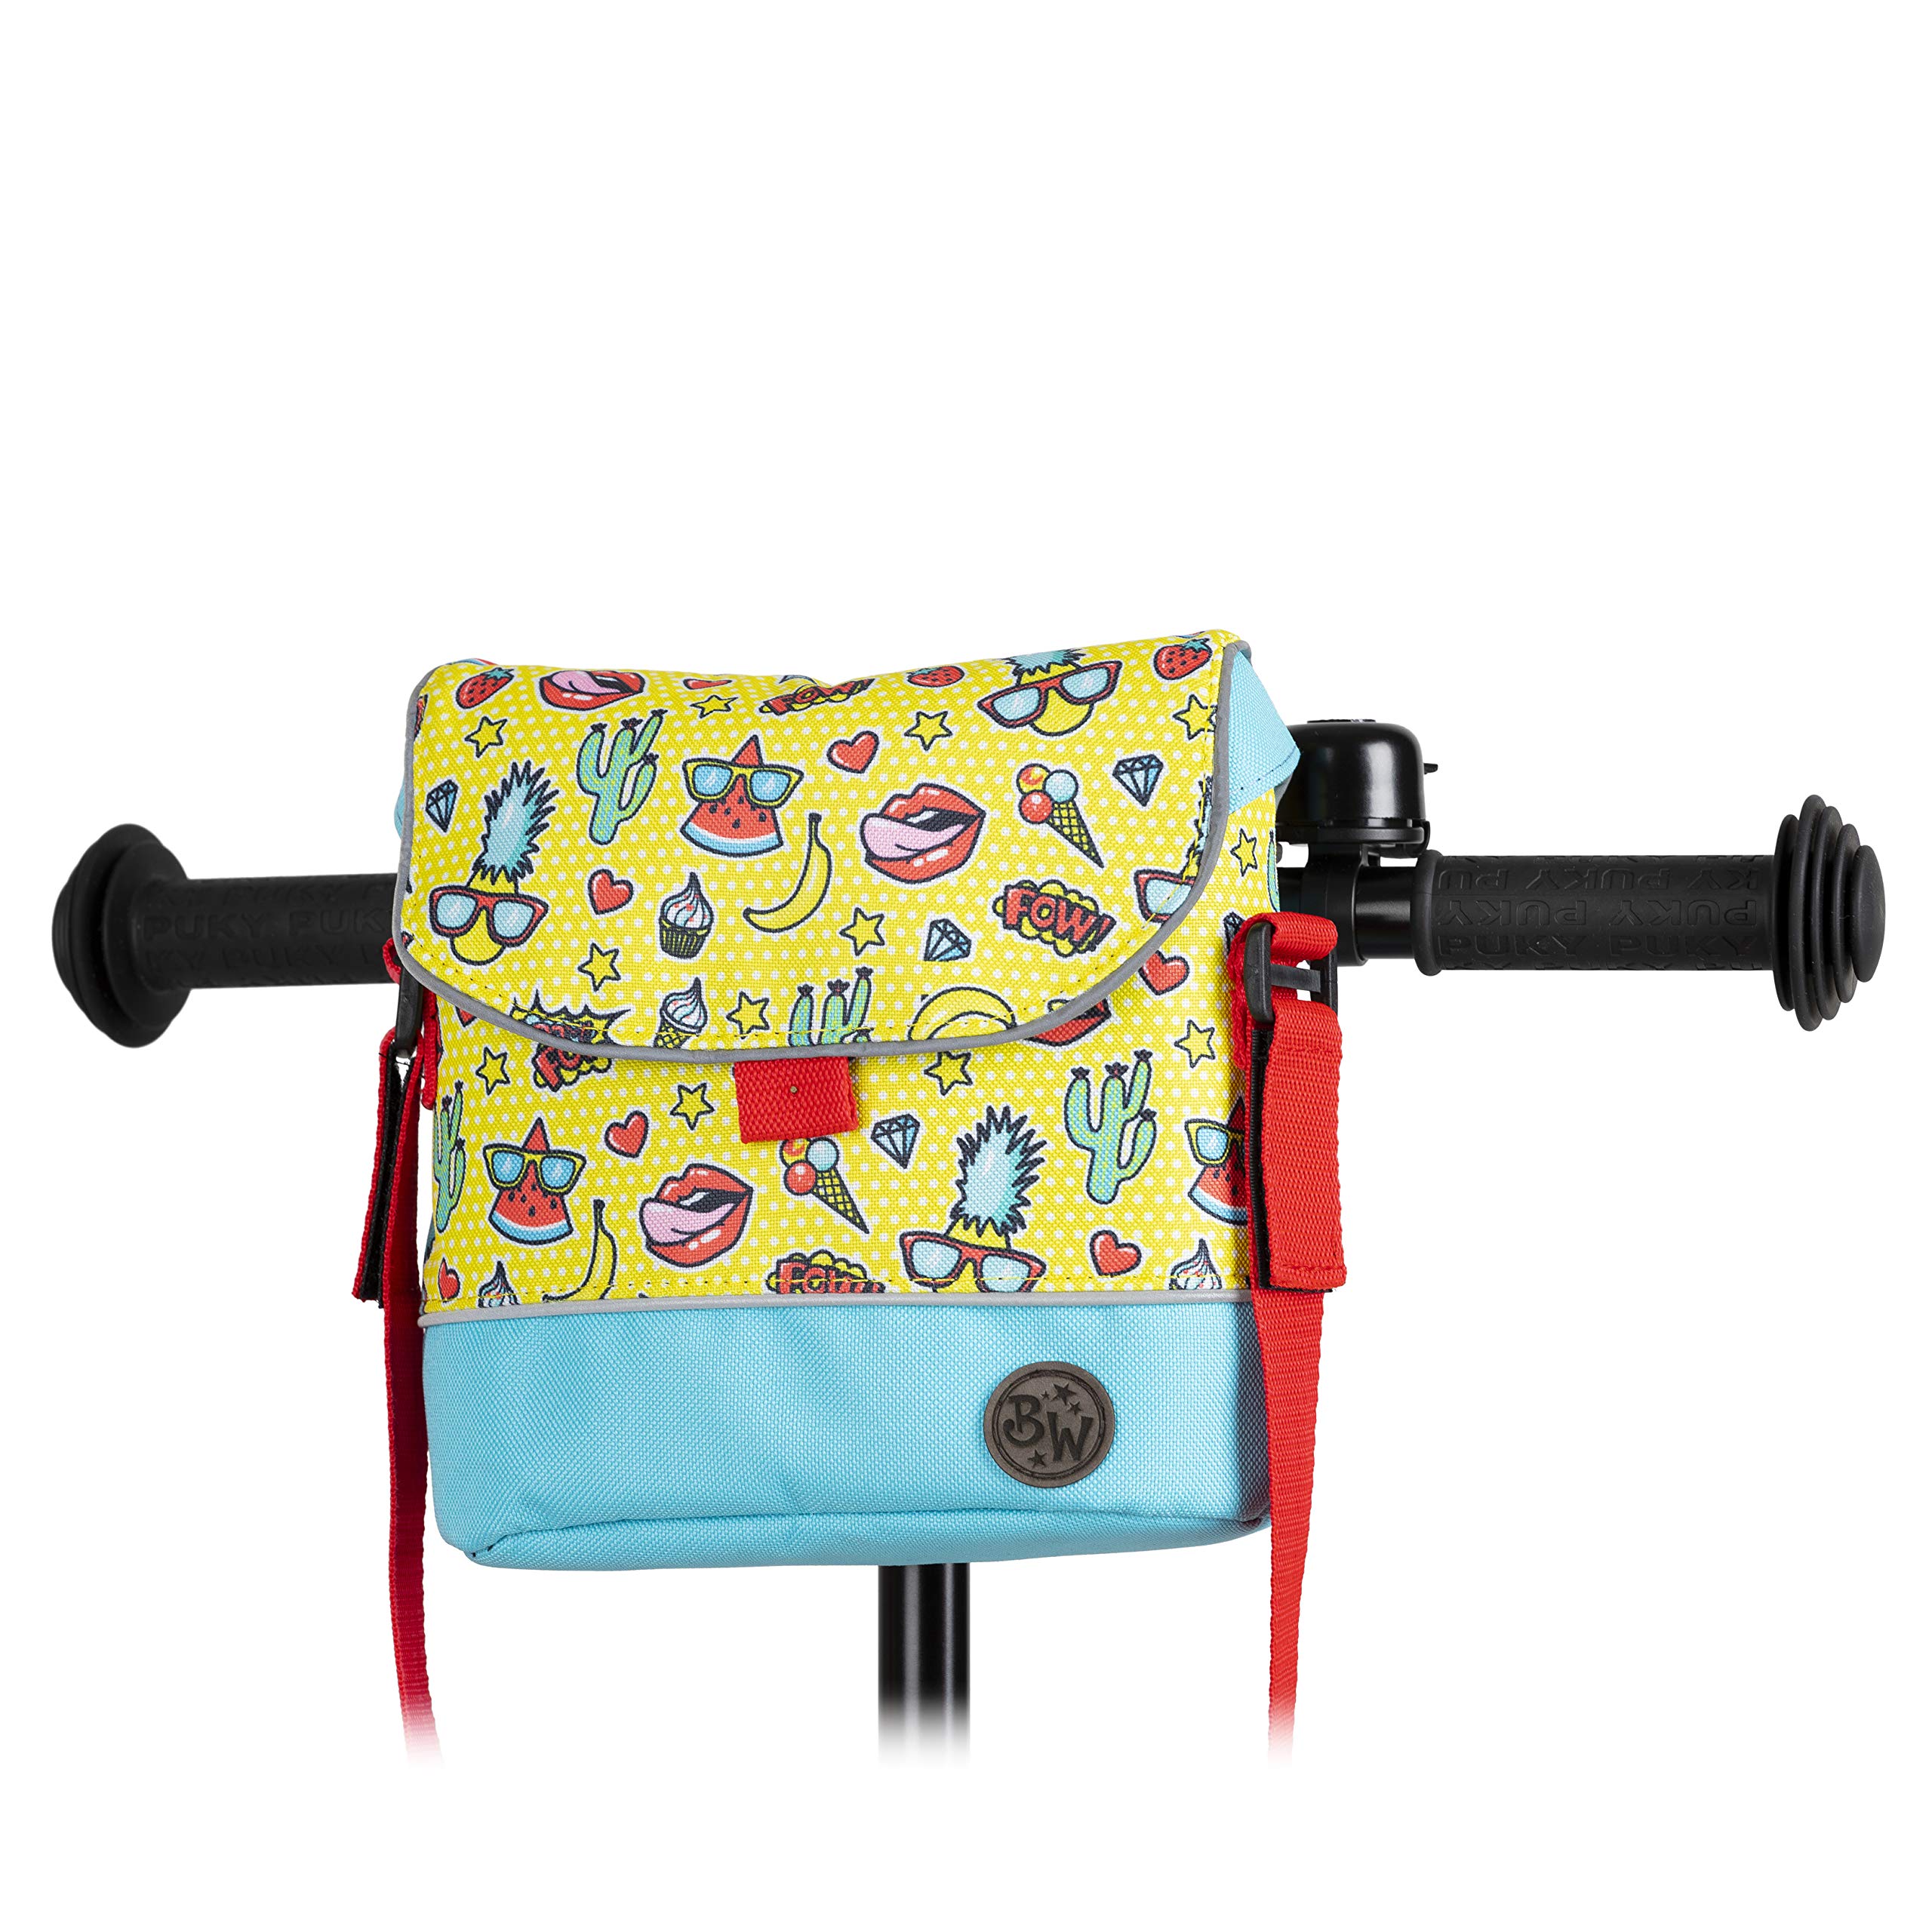 BAMBINIWELT Lenkertasche Tasche kompatibel mit Puky mit Woom Laufrad Räder Roller Fahrrad Fahrradtasche für Kinder wasserabweisend mit Schultergurt (Modell 18)